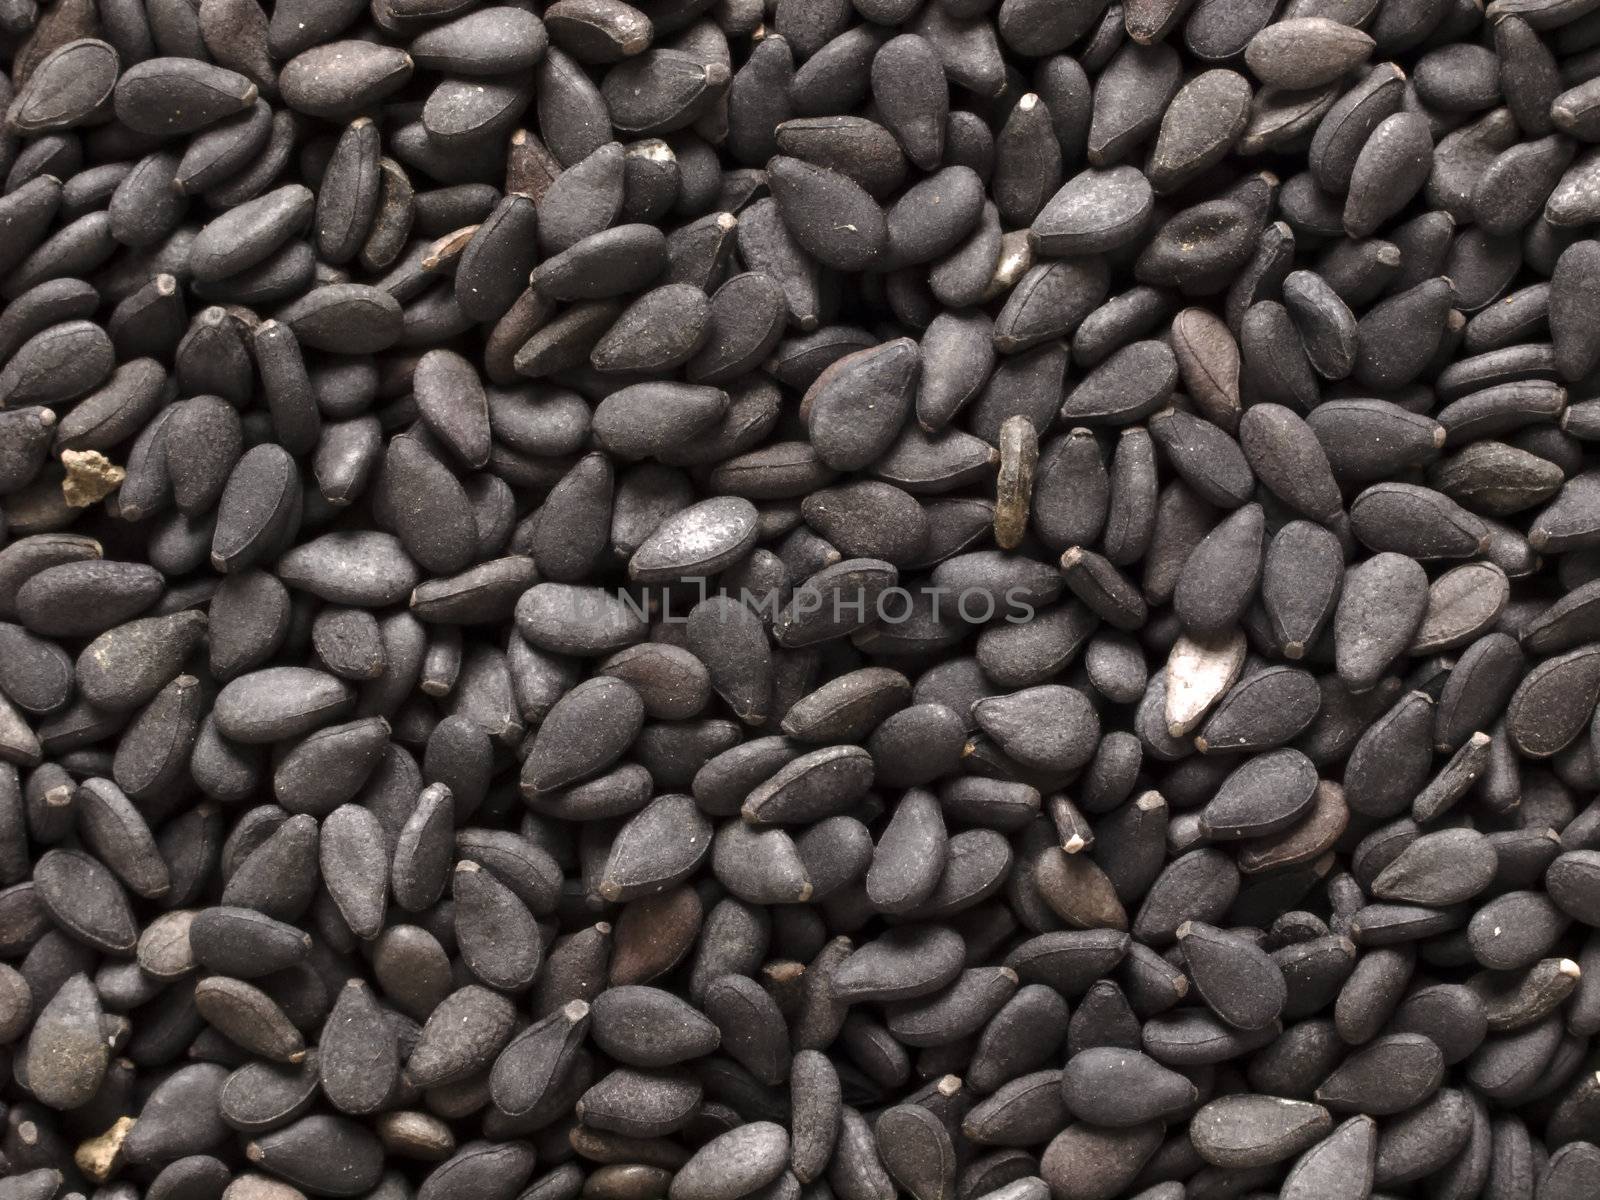 black sesame seeds by zkruger